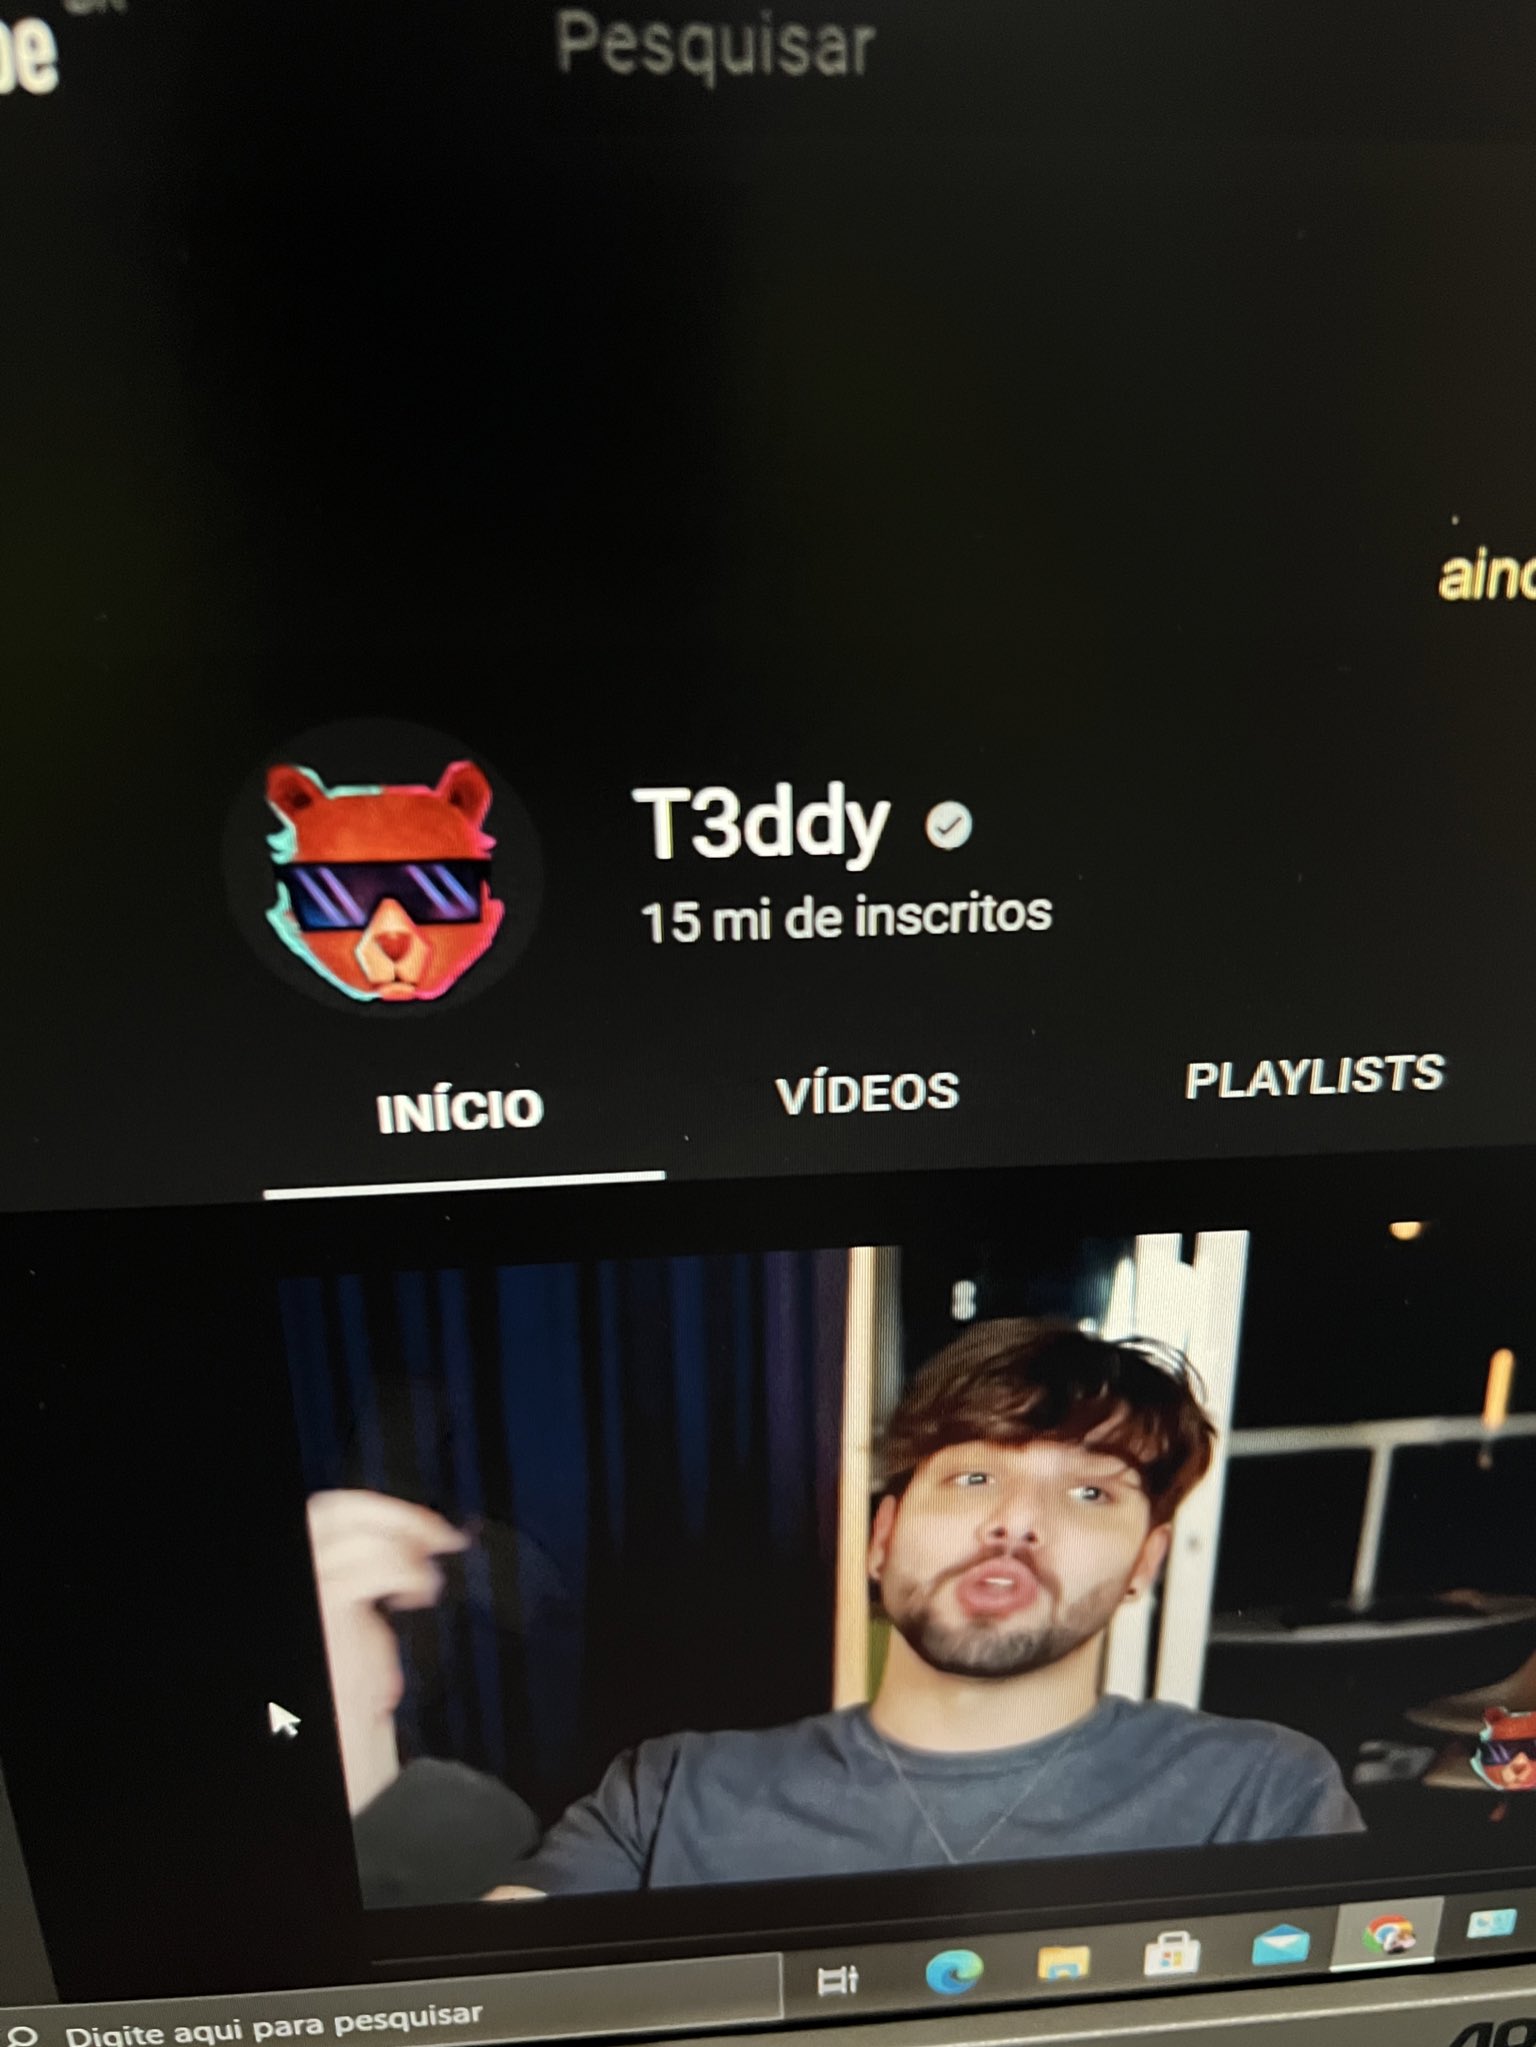 T3ddy Updates on X: IMAGINE SE USASSE! Lucas atingiu 5 MILHÕES de  seguidores em sua conta oficial do Instagram.  / X